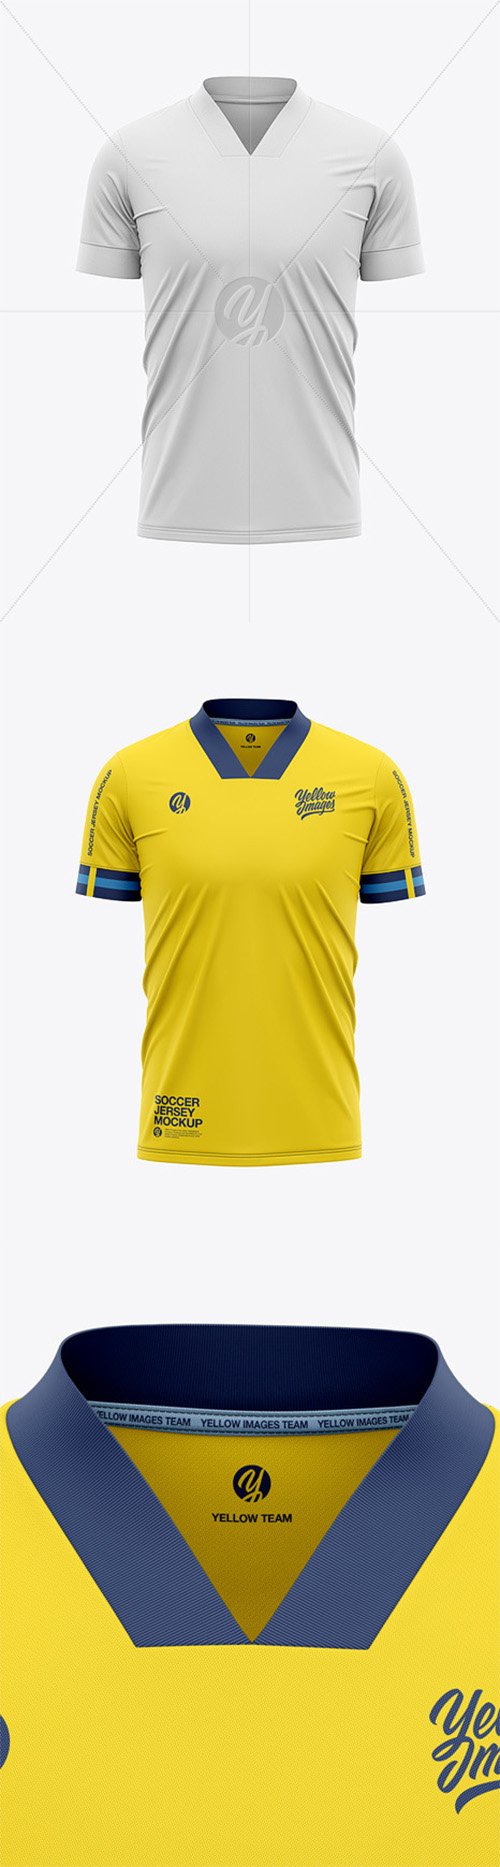 Men’s Soccer Jersey T-Shirt Mockup - Front View - Football Jersey Soccer T-shirt 56320